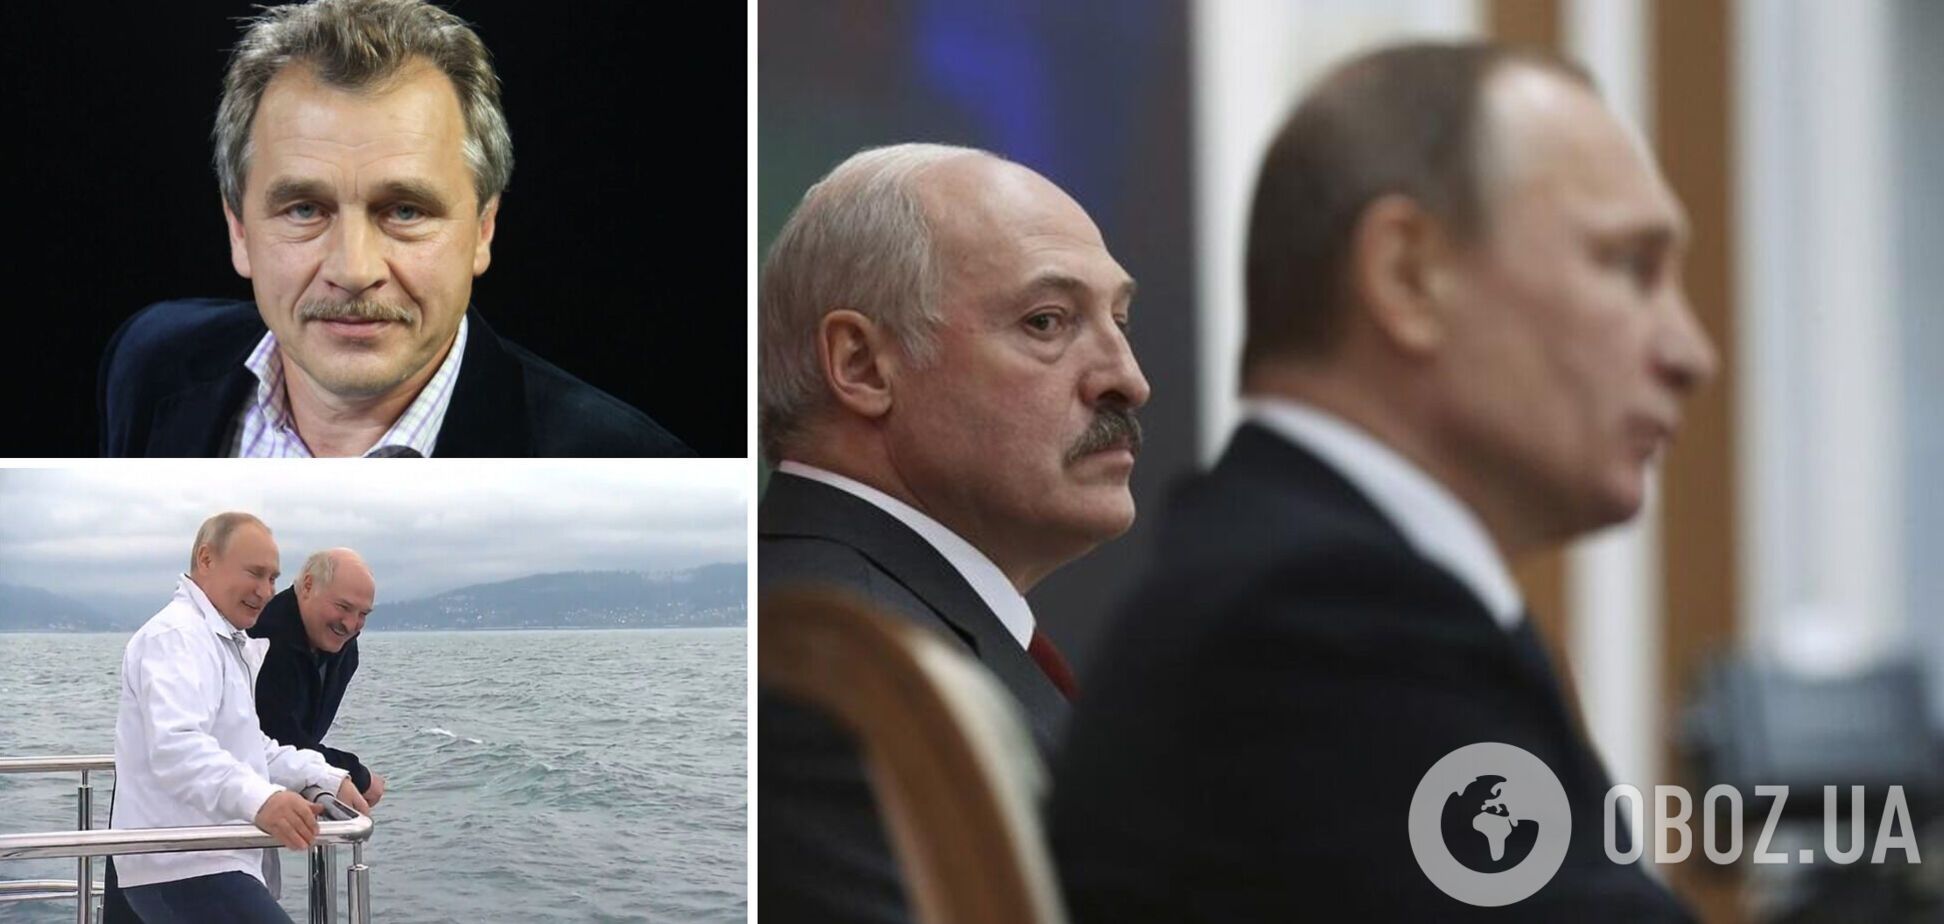 Оппозиционер Лебедько: когда Путин проиграет в войне, Лукашенко превратится в труп. Интервью